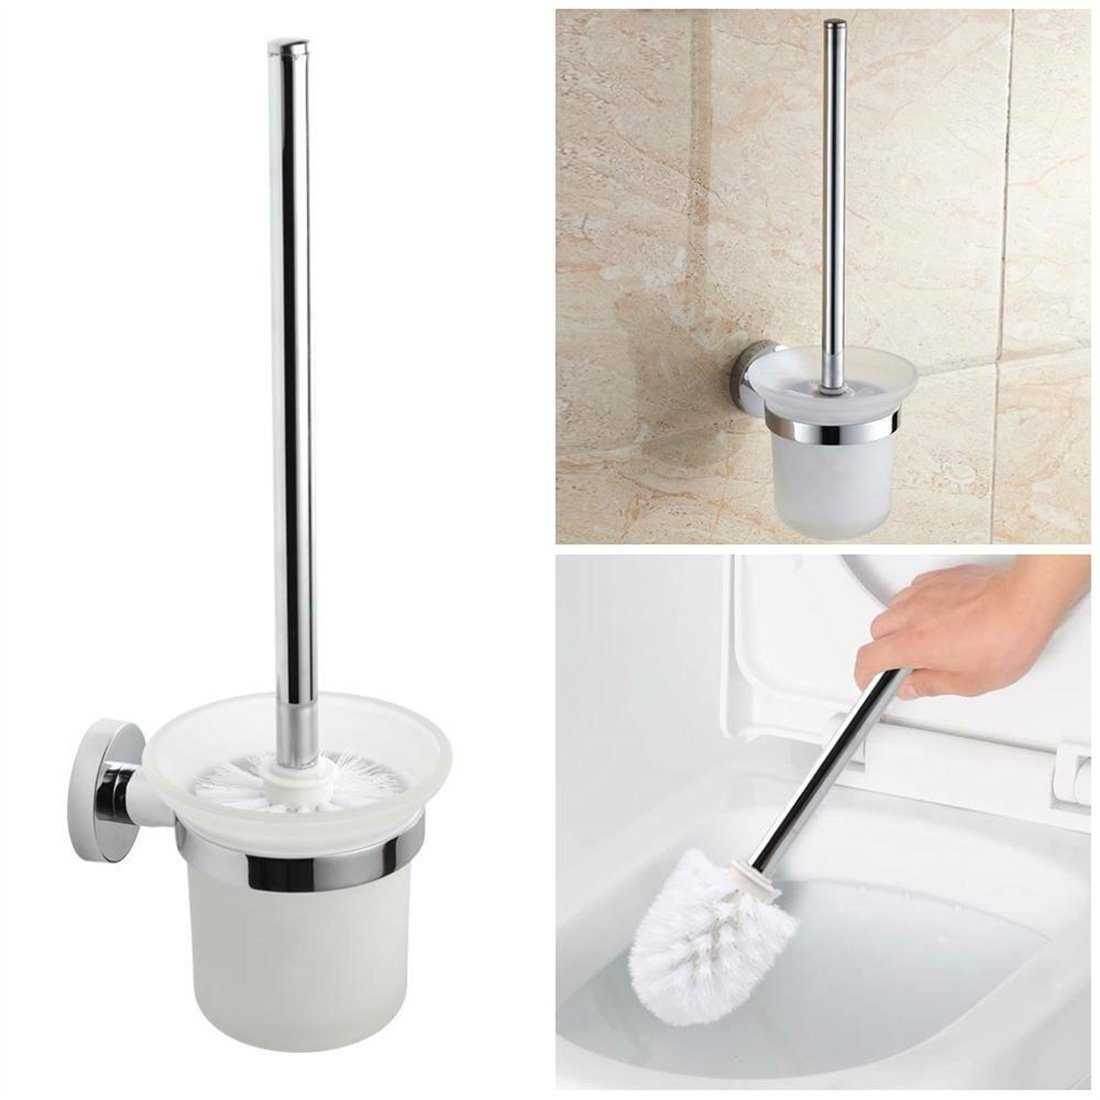 DÖRÖY WC-Reinigungsbürste Edelstahl Bad Wandmontage Bürstenhalter + Bürste WC Garnitur Klobürste